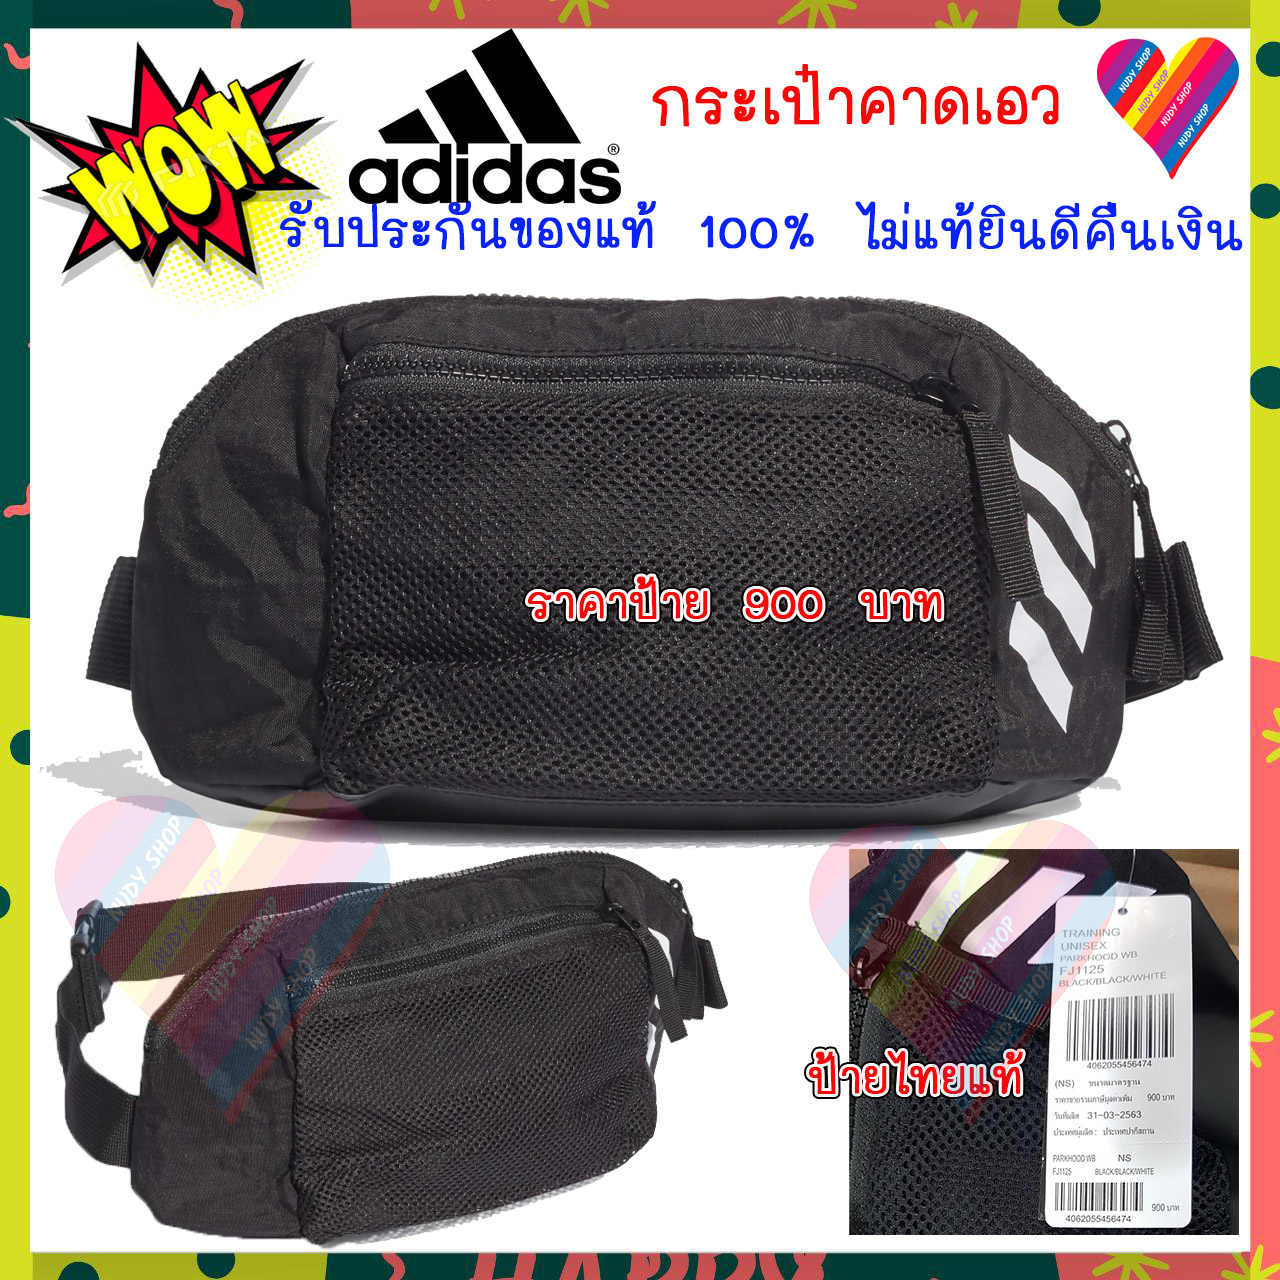 ส่งฟรี💥 Adidas กระเป๋าคาดเอว ของแท้ 100% จาก ชอปไทย กระเป๋า กระเป๋าอาดิดาส กระเป๋าadidas